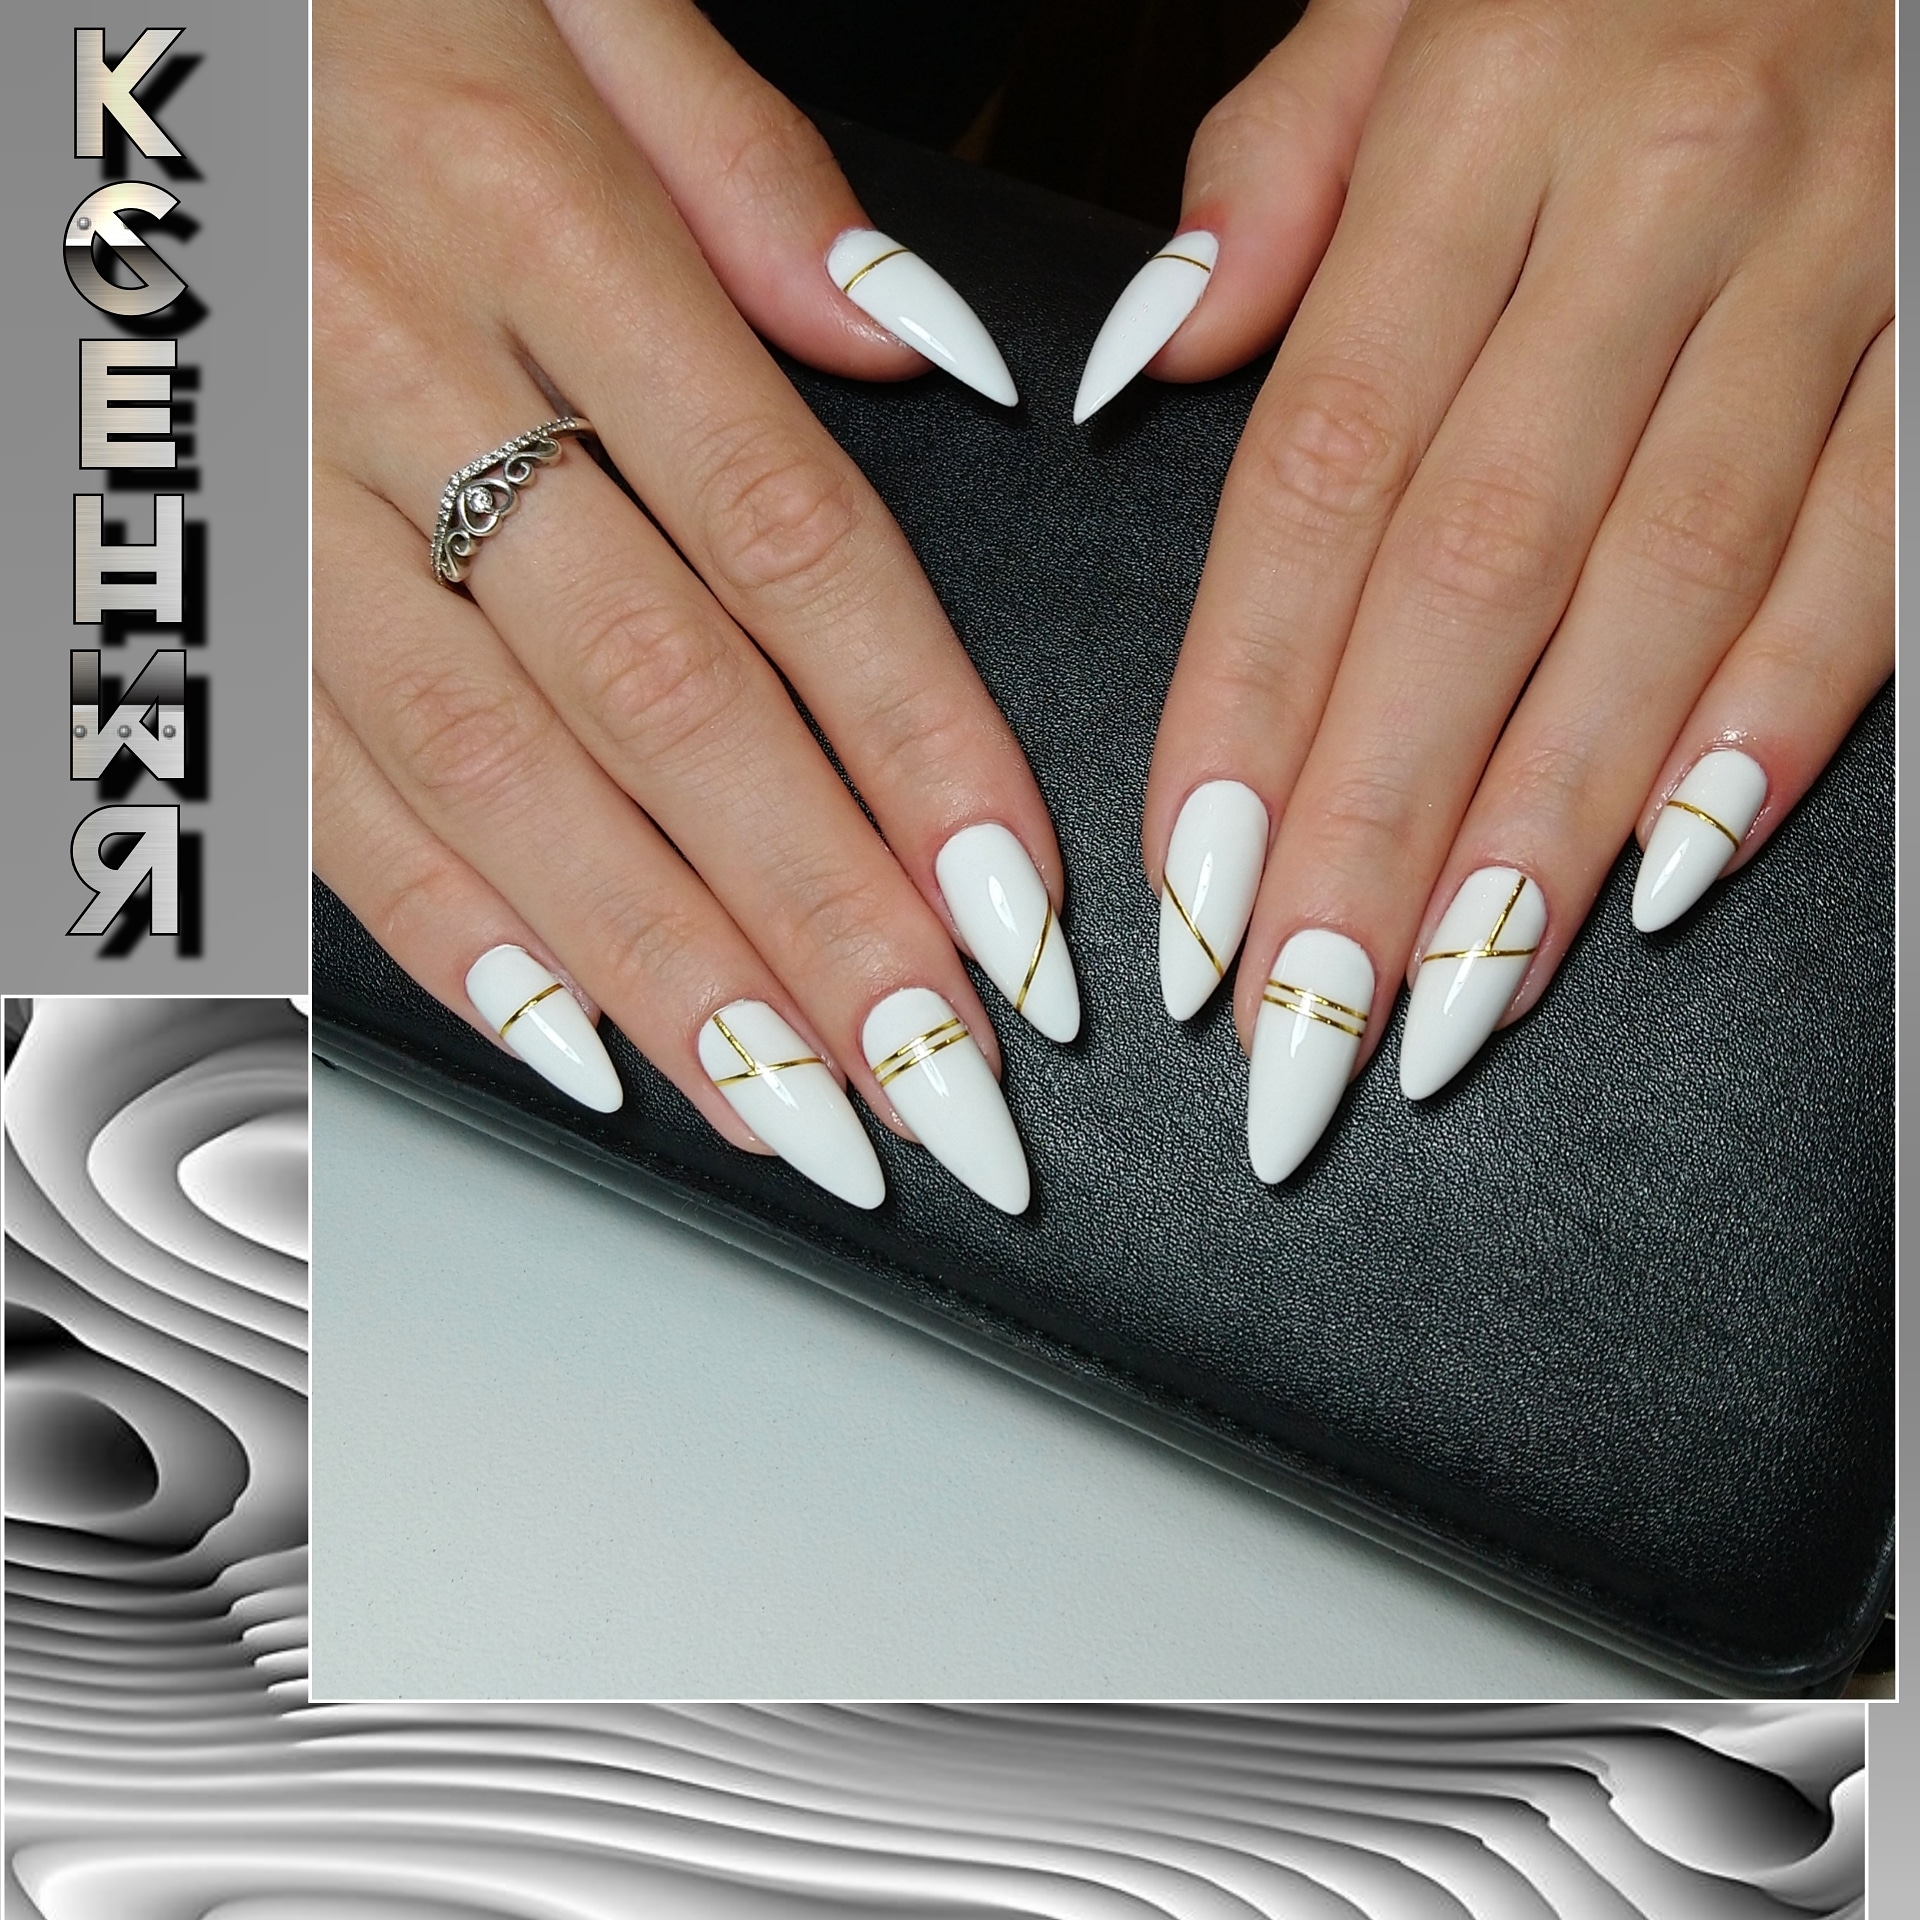 Геометрический маникюр с золотыми полосками в белом цвете на длинные ногти.